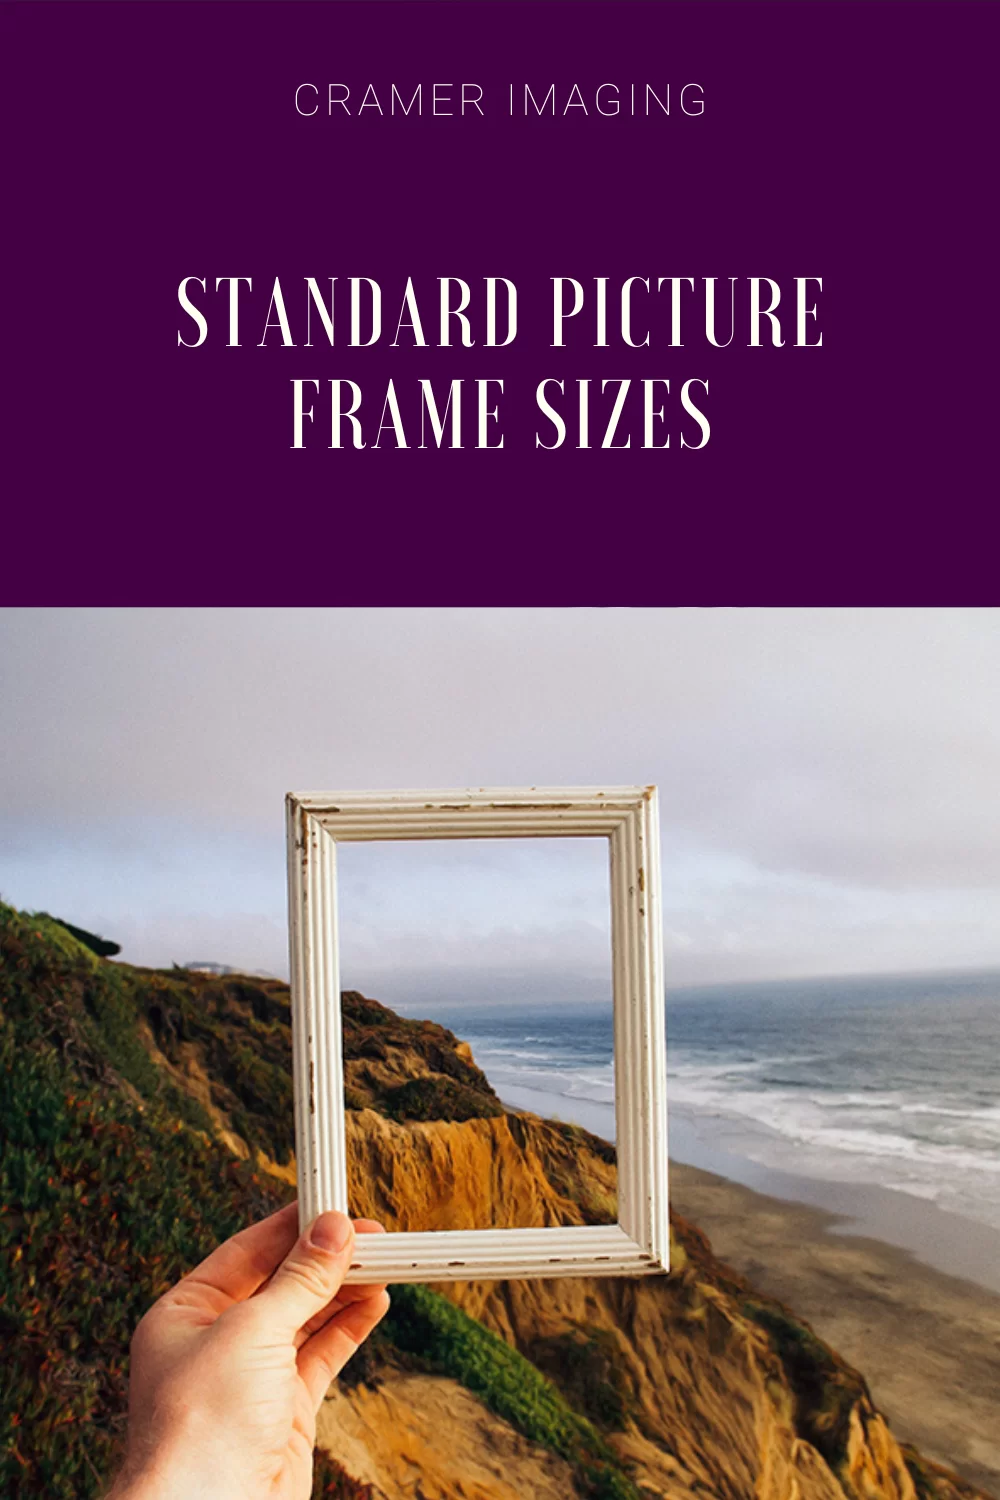 https://cramerimaging.com/wp-content/uploads/2015/10/Standard-Picture-Frame-Sizes-Pinterest.webp